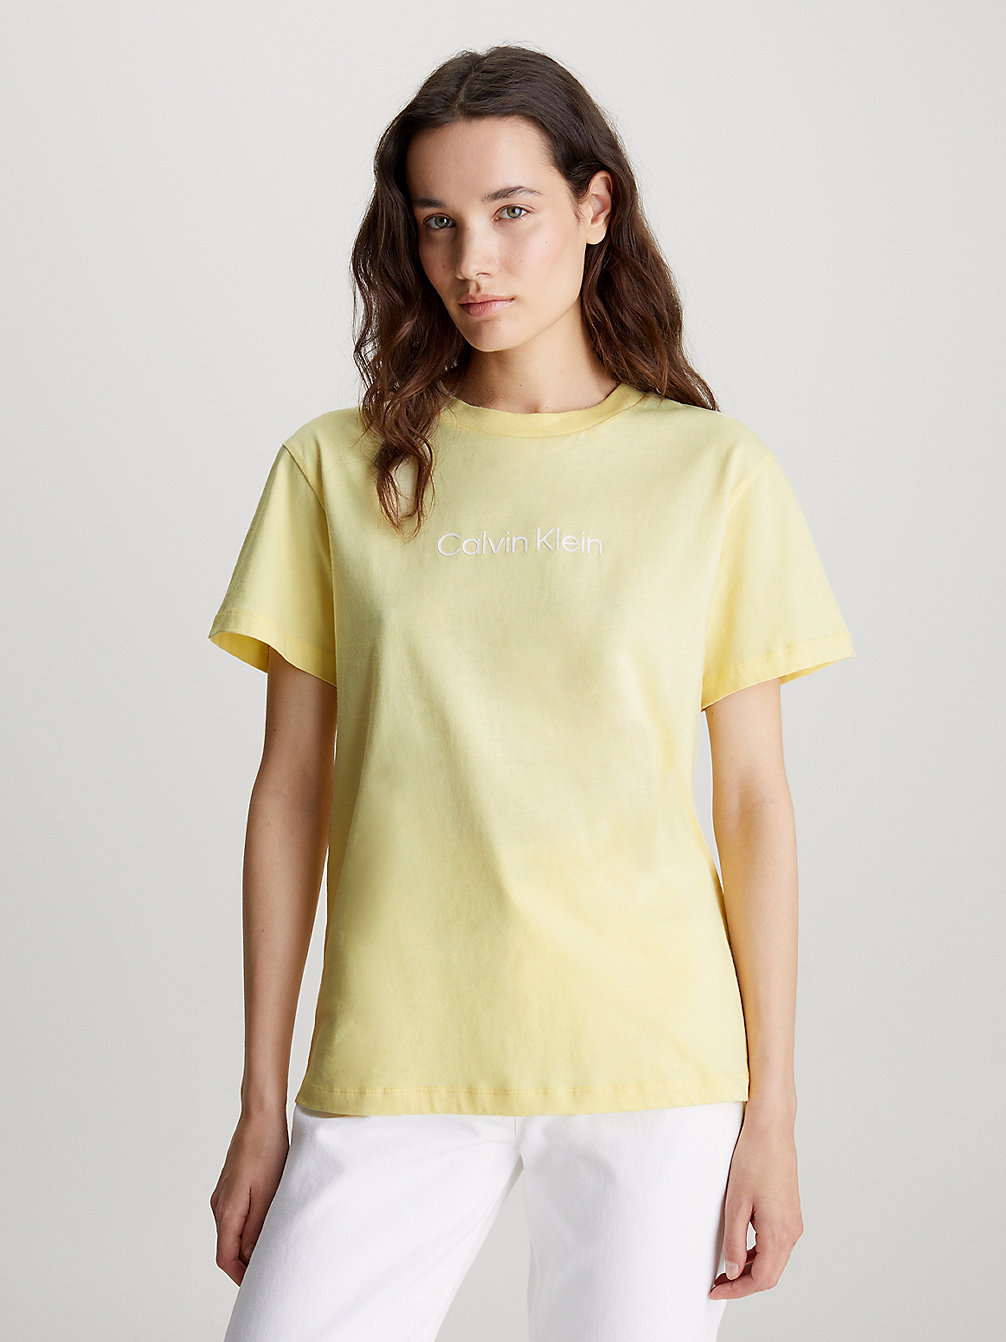 MIMOSA YELLOW Logo-T-Shirt Aus Baumwolle undefined Damen Calvin Klein